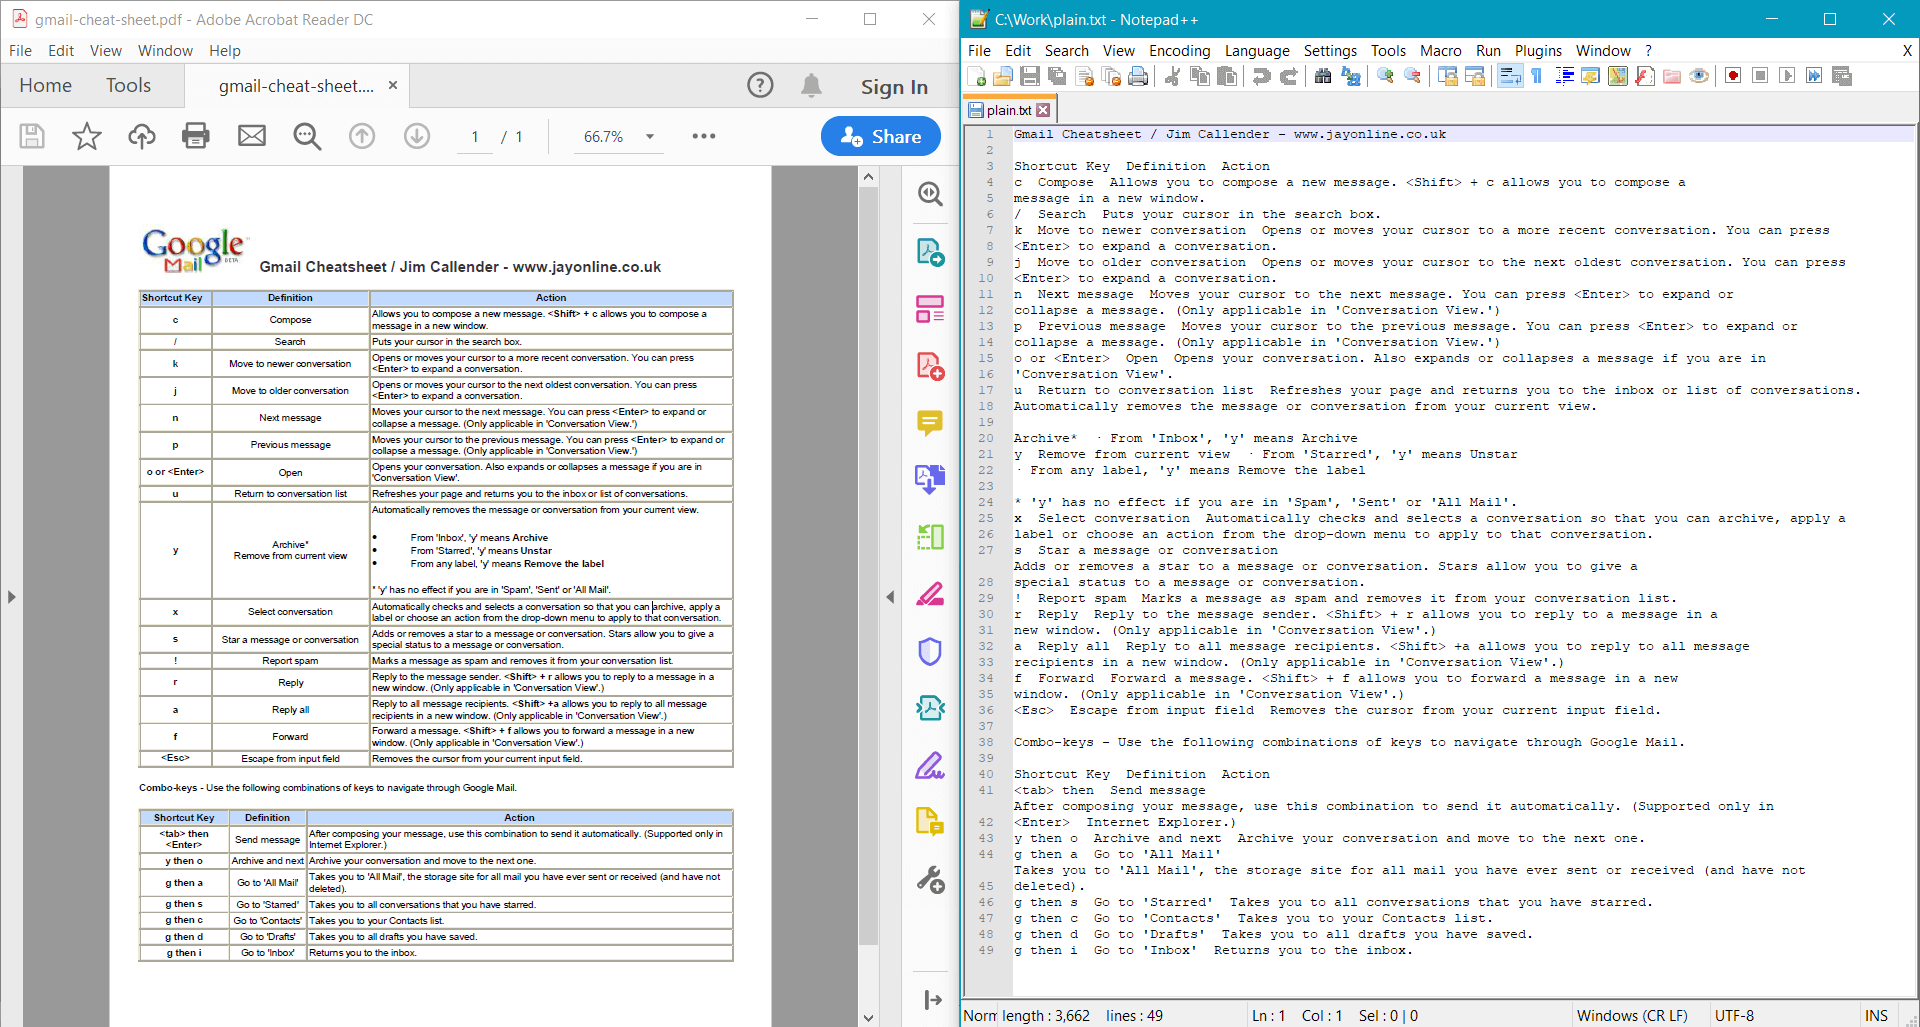 Resultado de la extracción de texto plano de un documento PDF en C# .NET